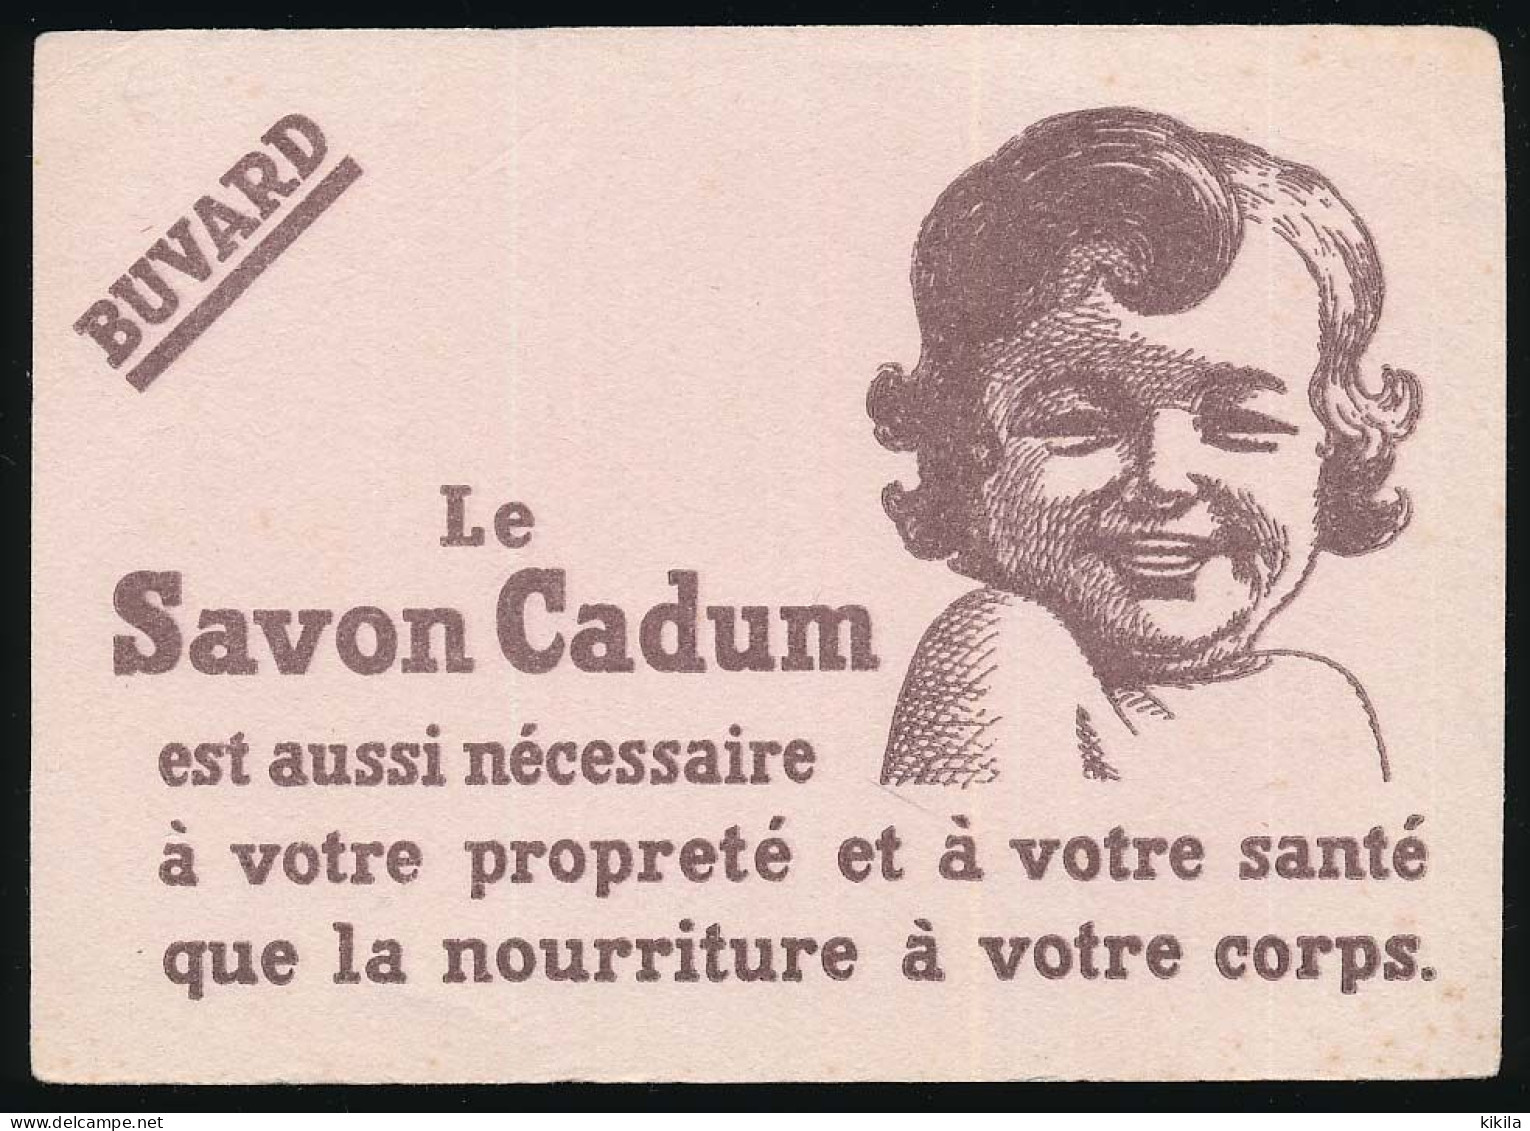 Buvard 16 X 11,4 Le Savon CADUM Bébé - Perfume & Beauty